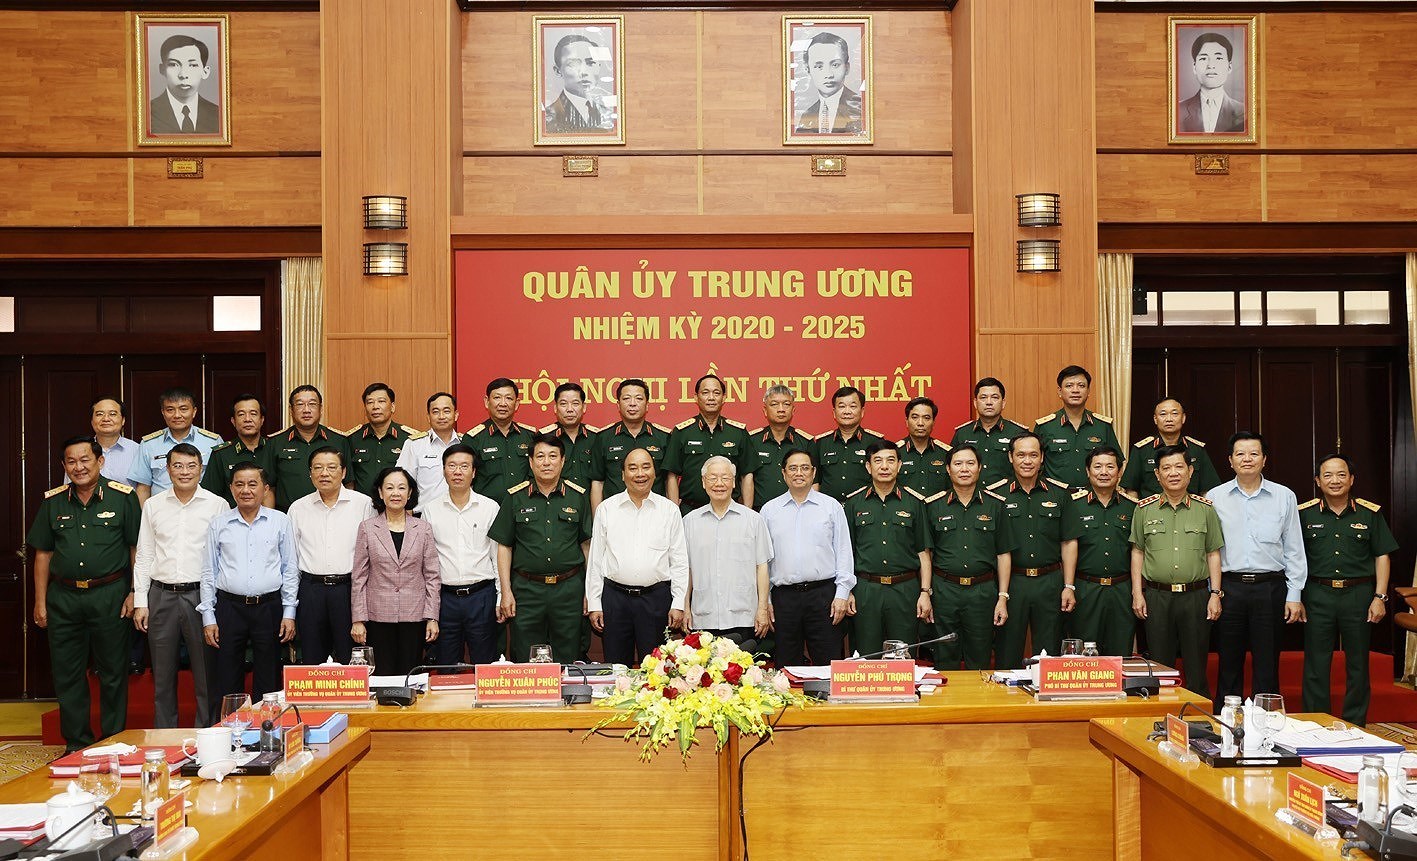 Генеральныи секретарь ЦК КПВ Нгуен Фу Чонг возглавил первое заседание Центральнои военнои комиссии срока полномочии 2020-2025 гг. hinh anh 1